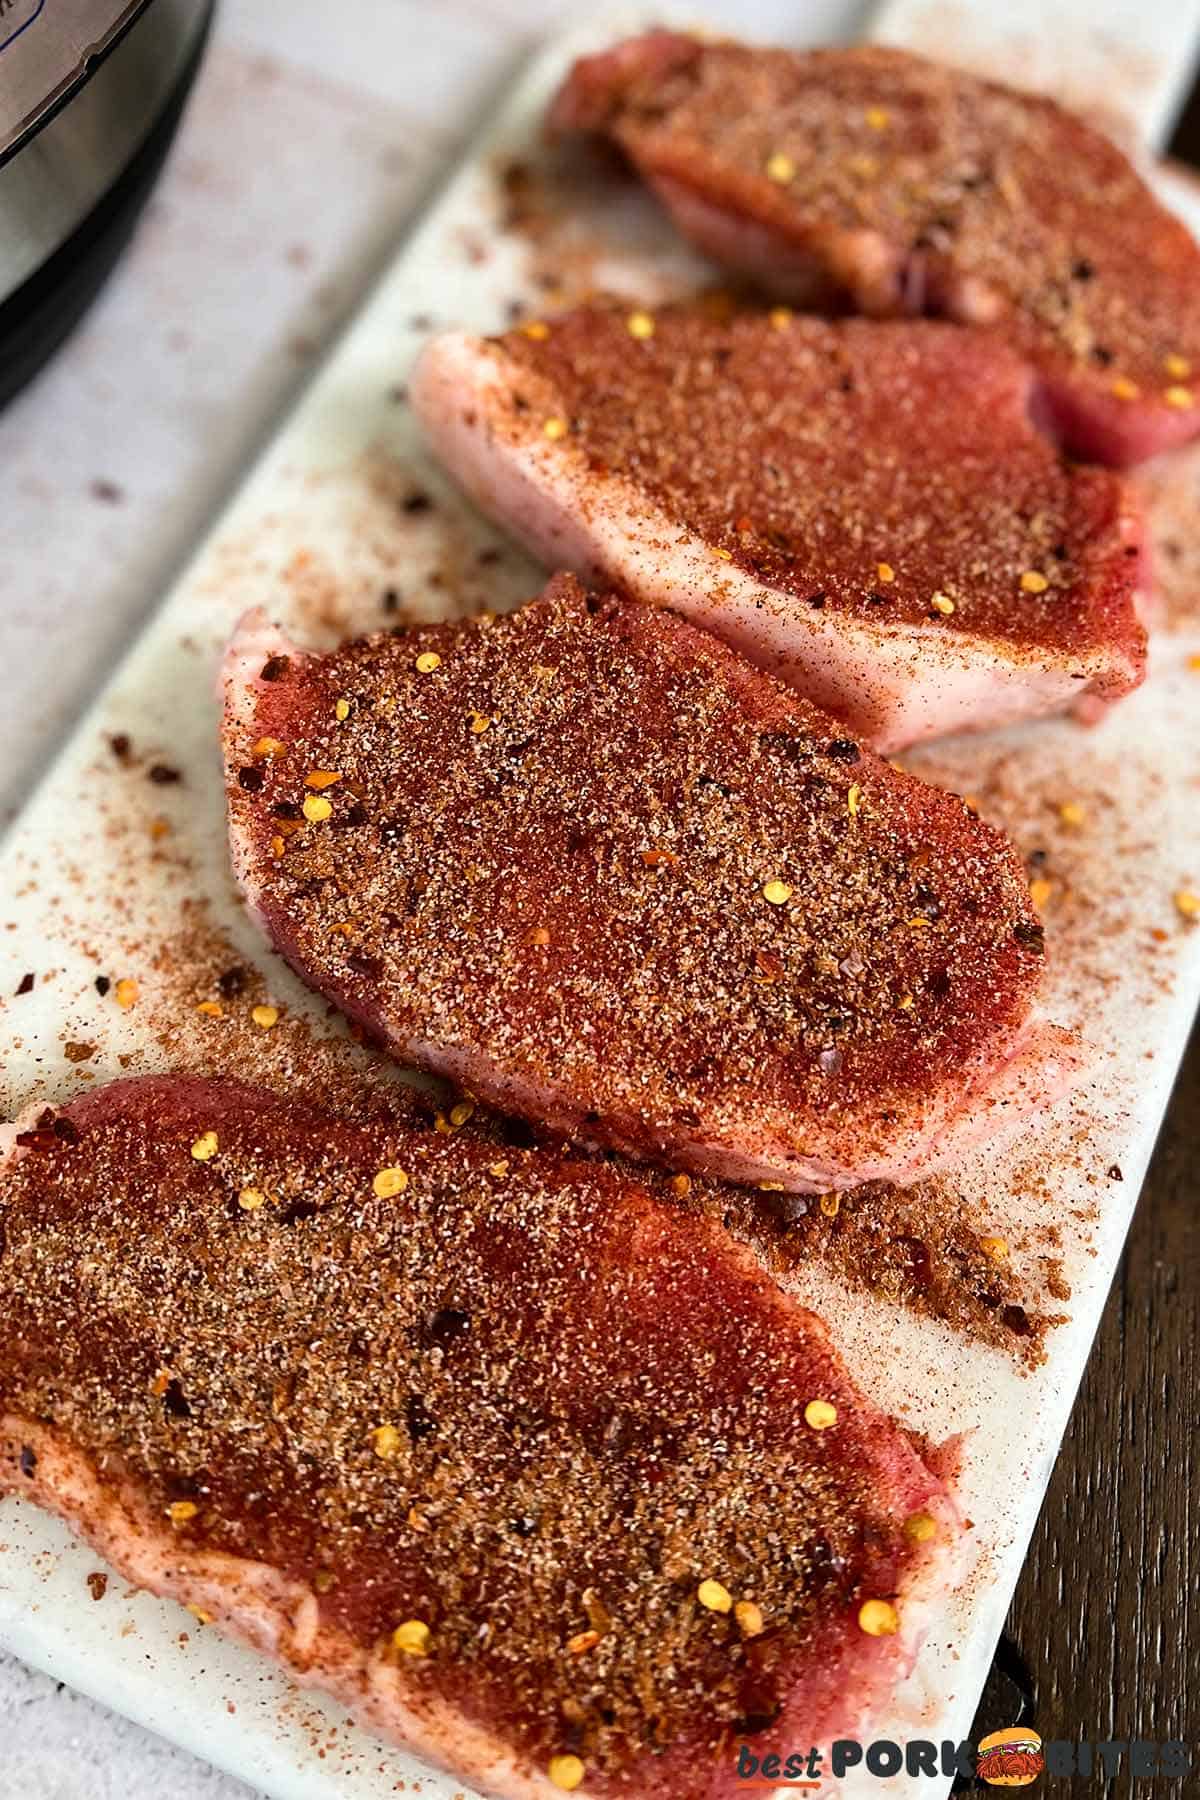 raw, seasoned pork chops on a cutting board